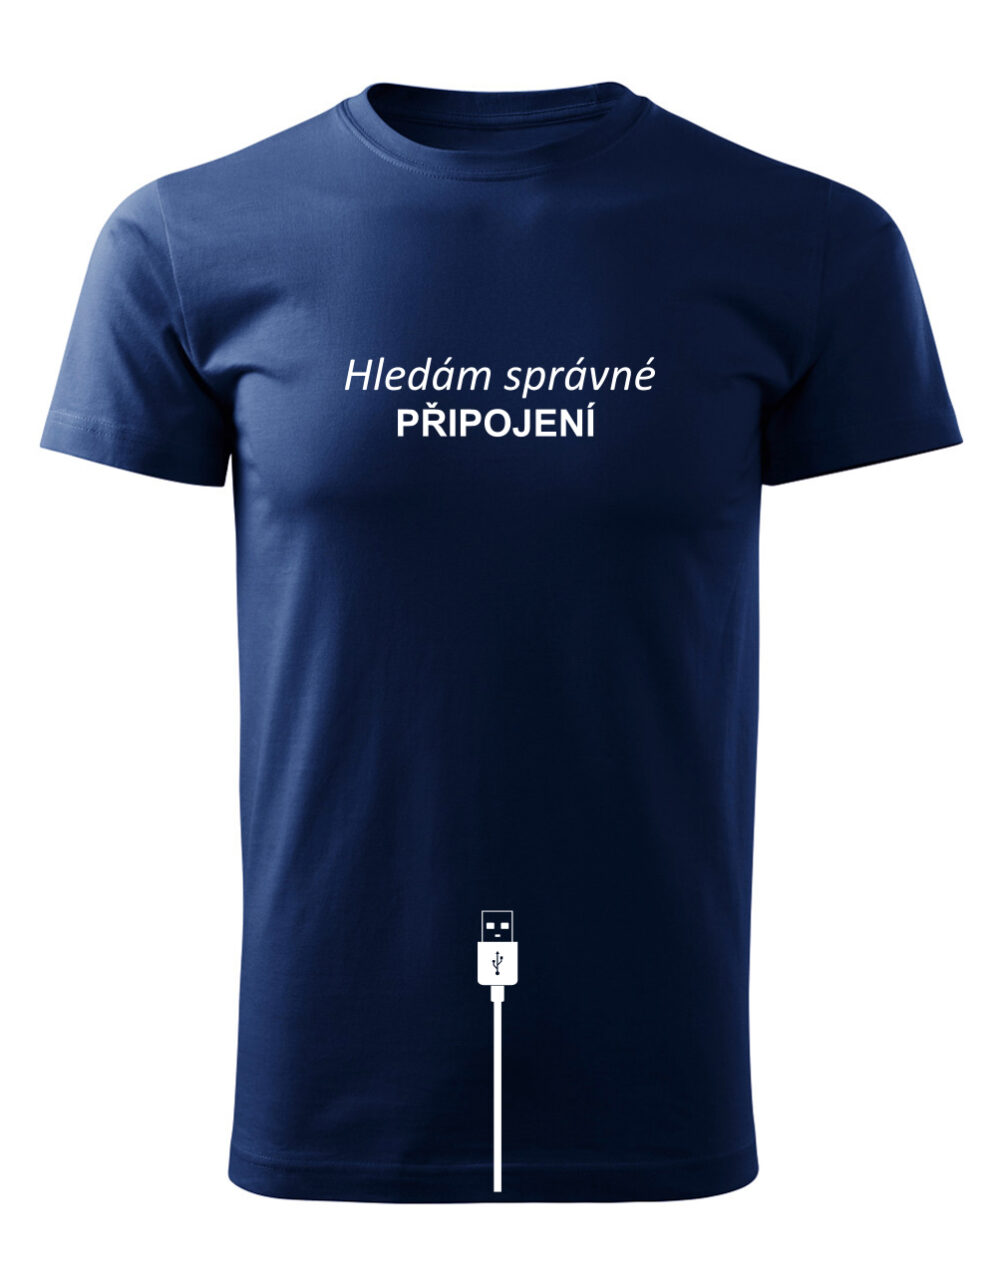 Pánské tričko s potiskem Hledám správné připojení námořnická modrá